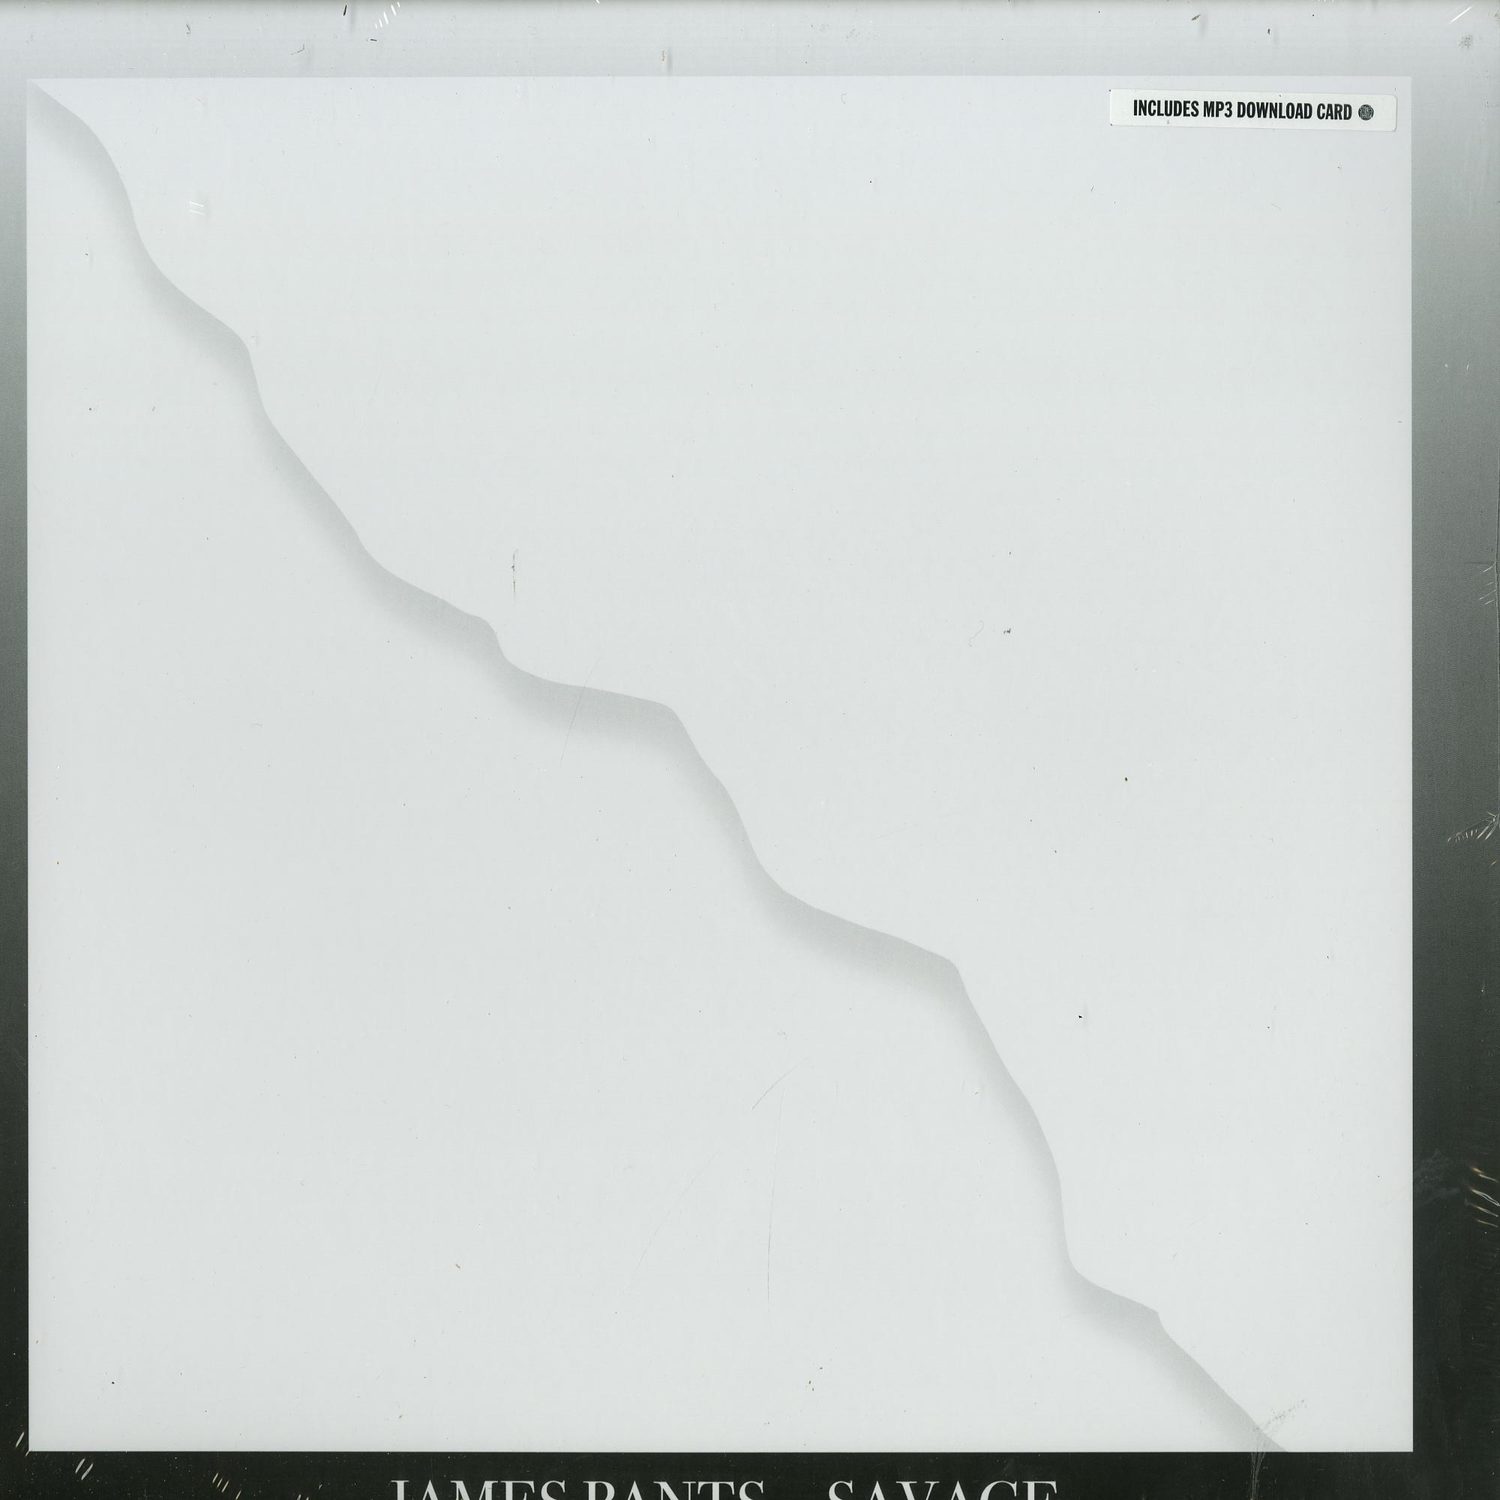 James Pants - SAVAGE 